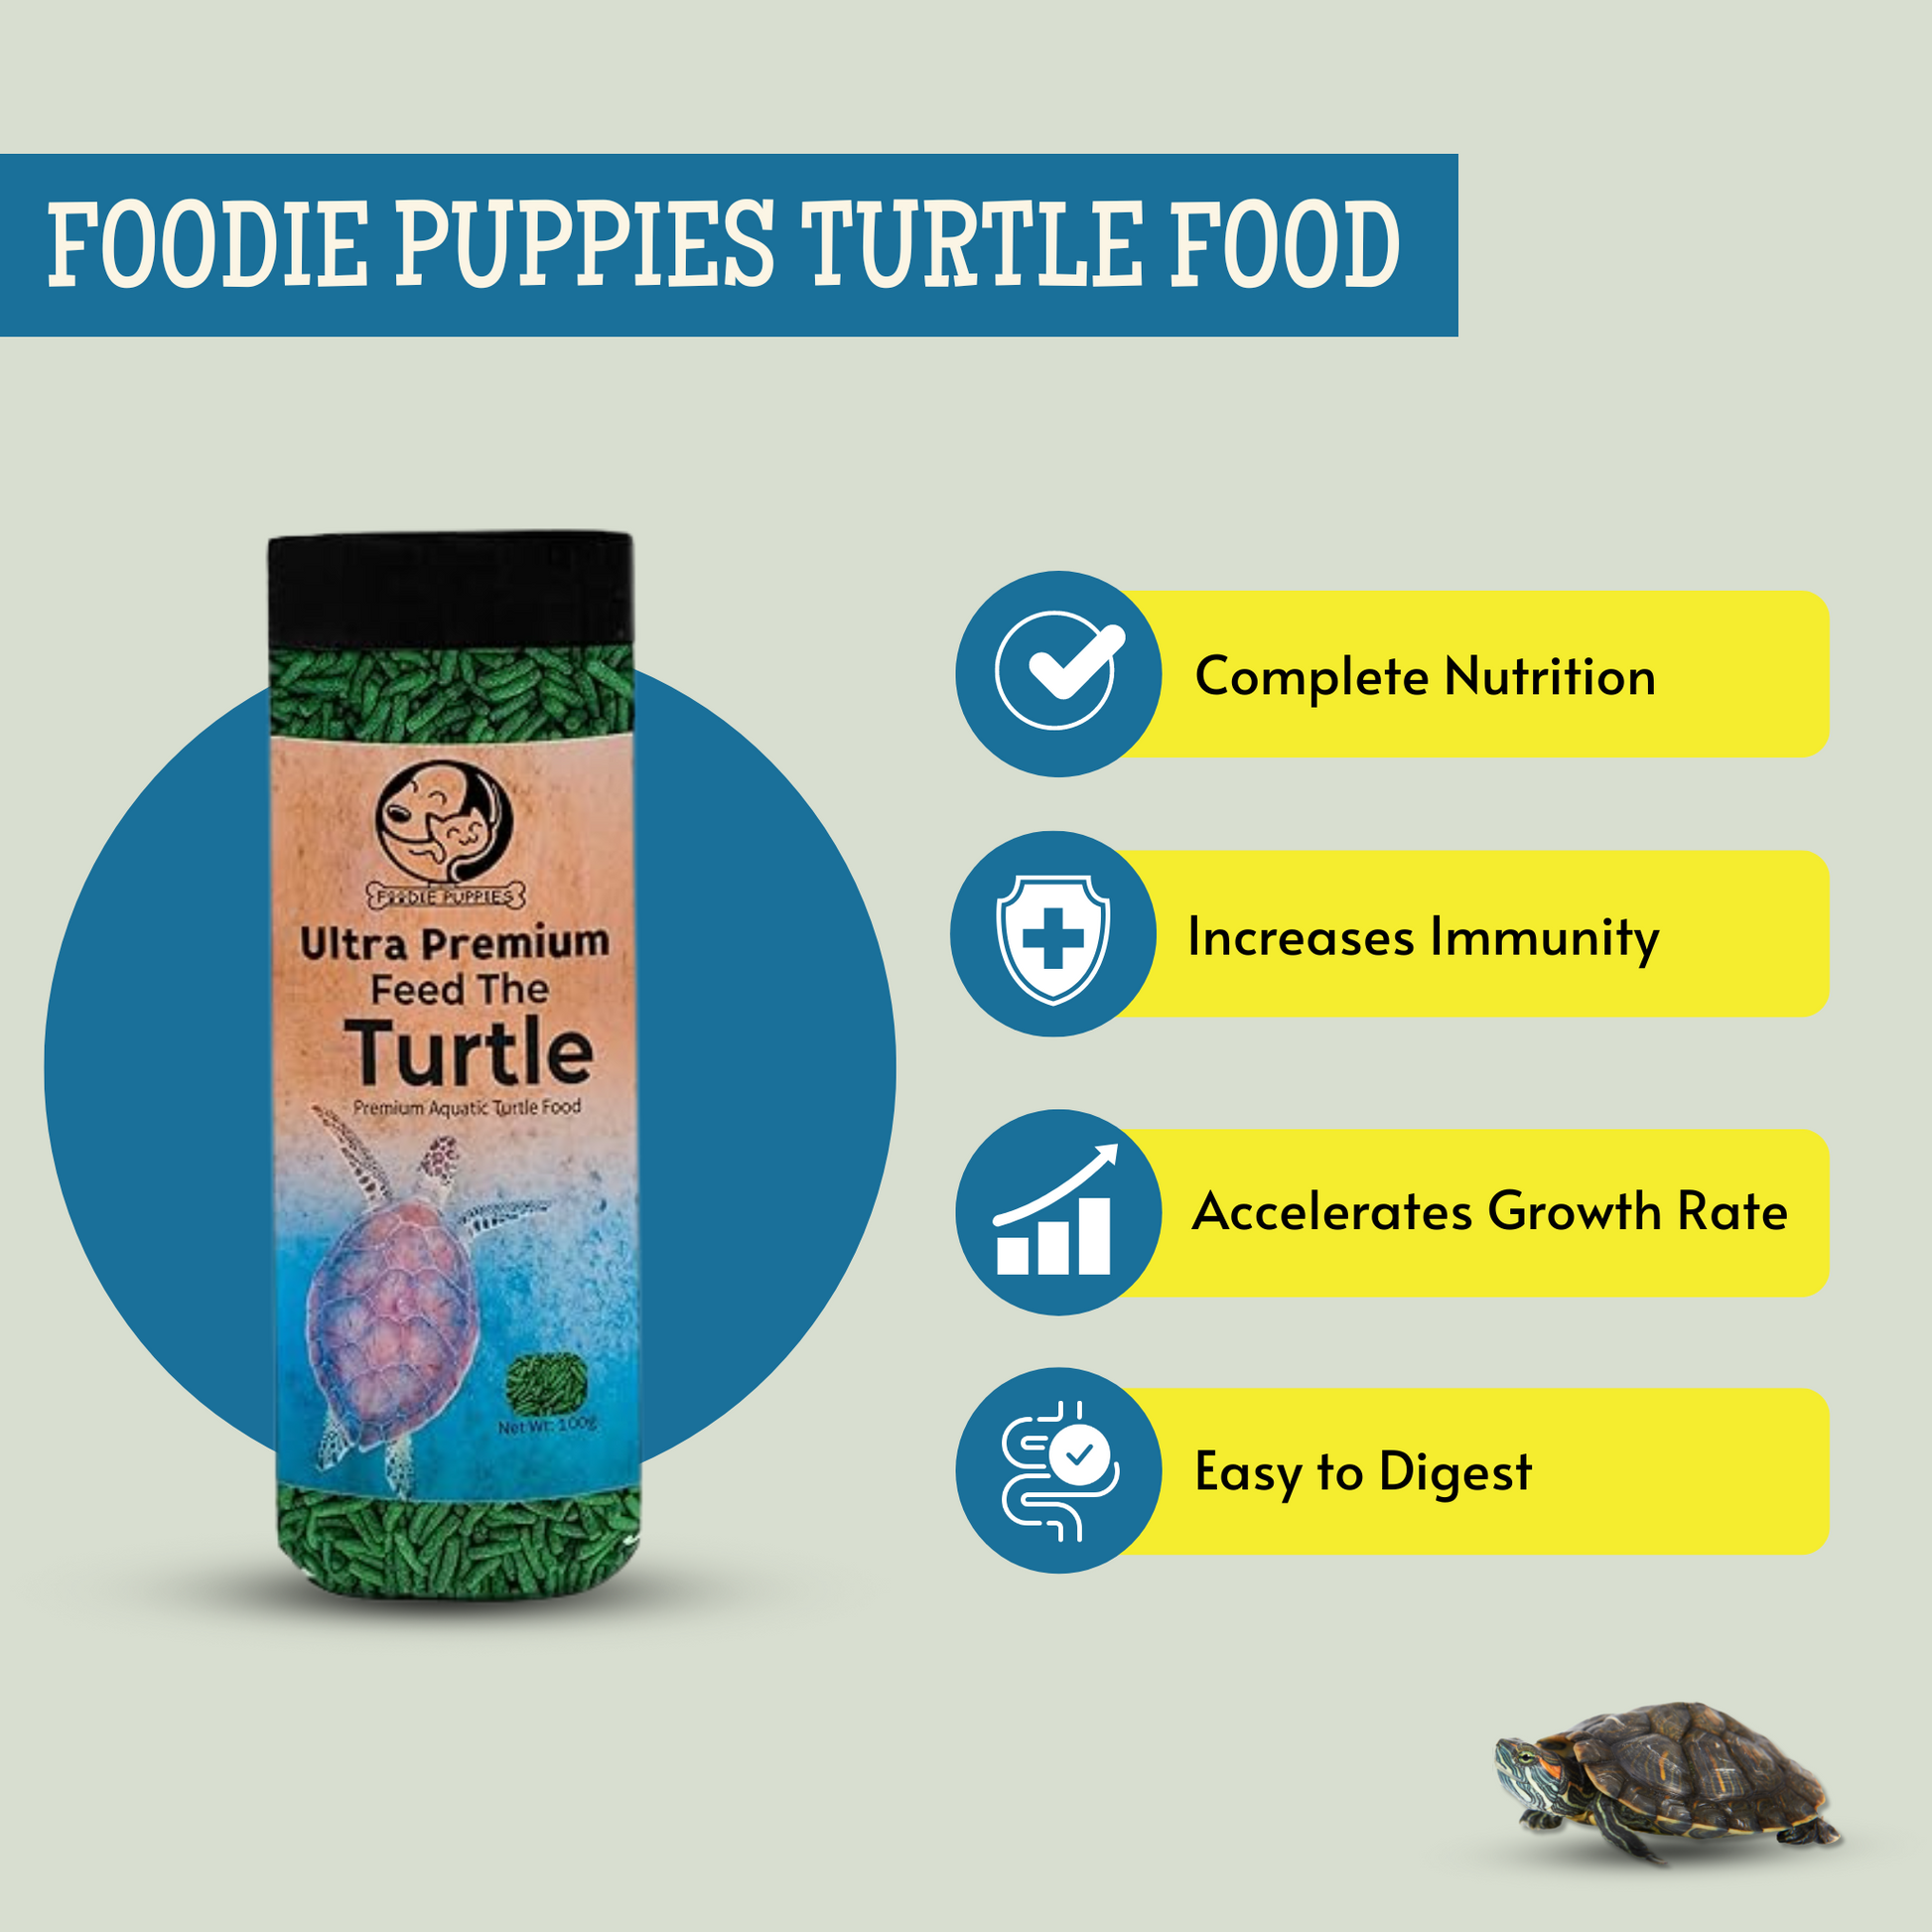 Foodie Puppies Turtle Food